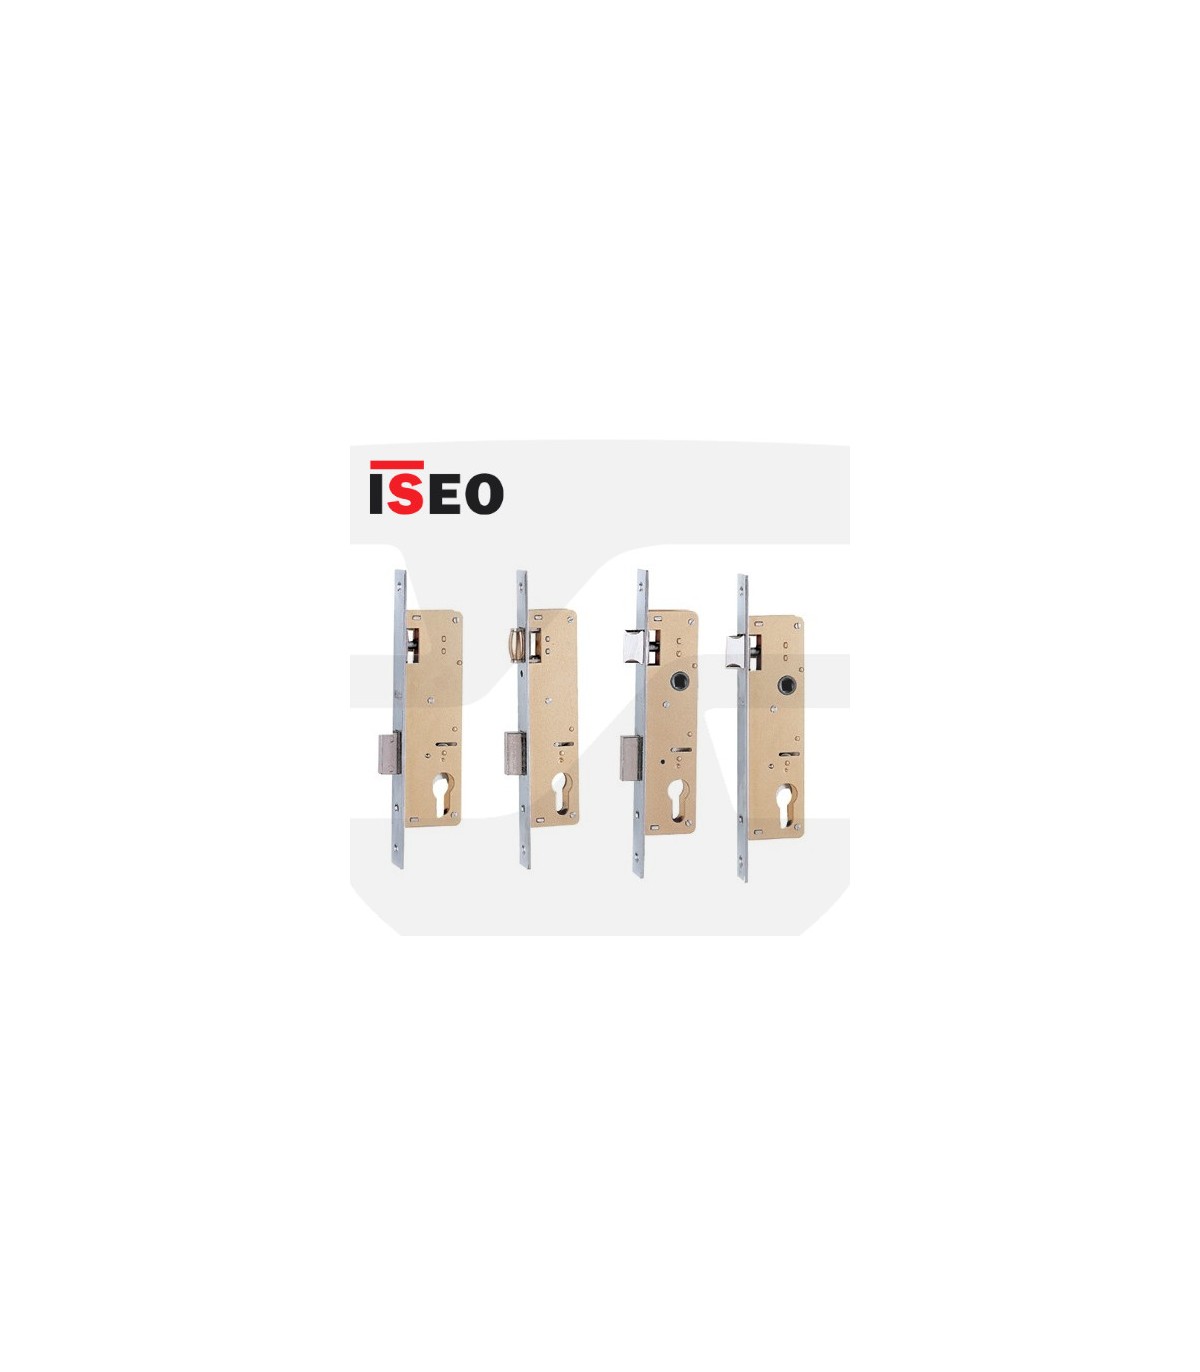 Cerradura ISEO Embutir 741 Resbalón y Palanca en Acero Cromado - Vidal Locks